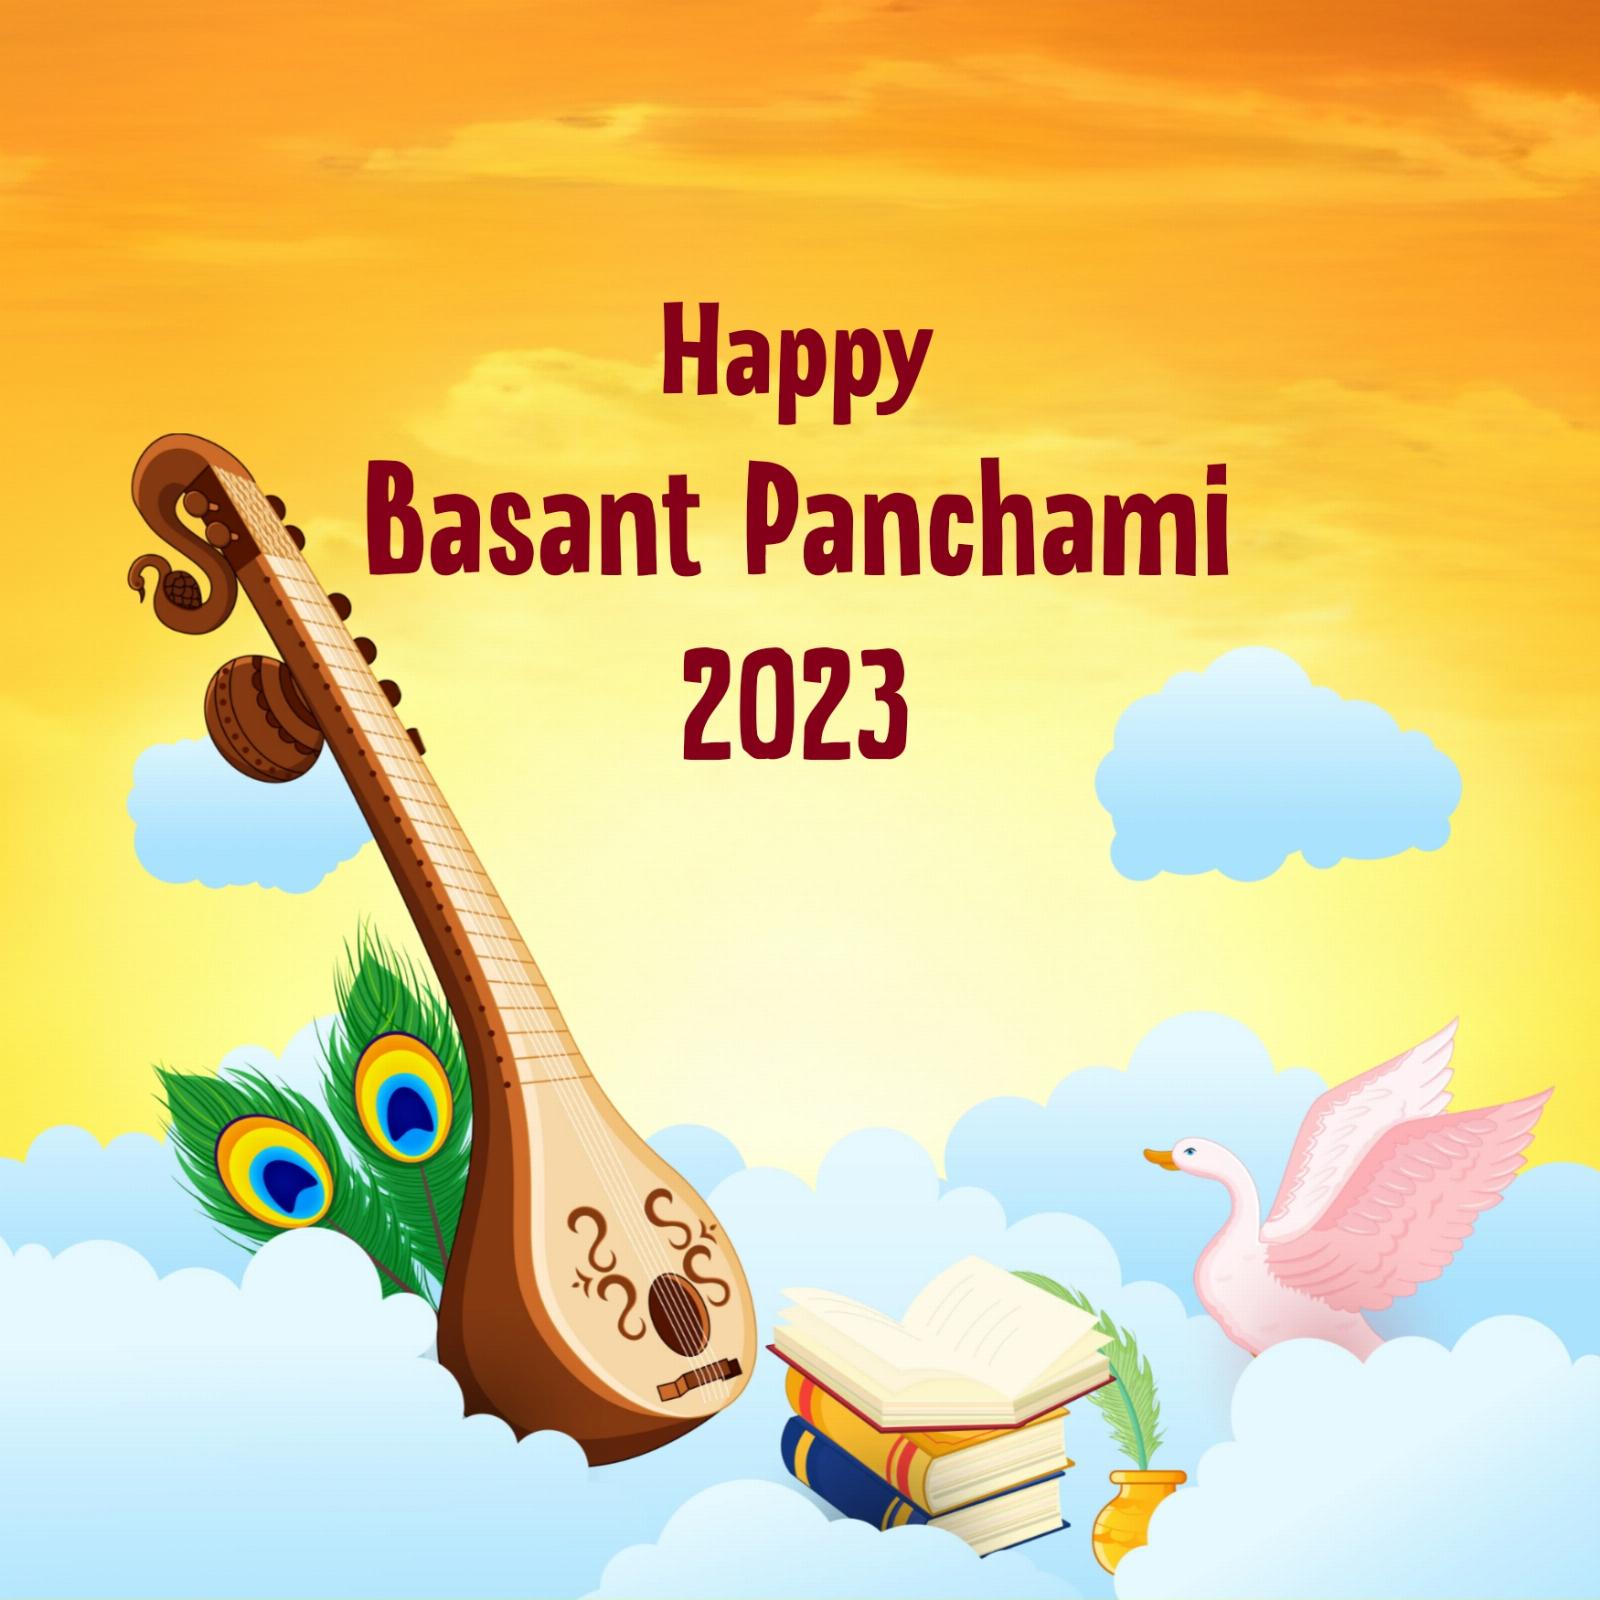 Happy Basant Panchami 2023 Images